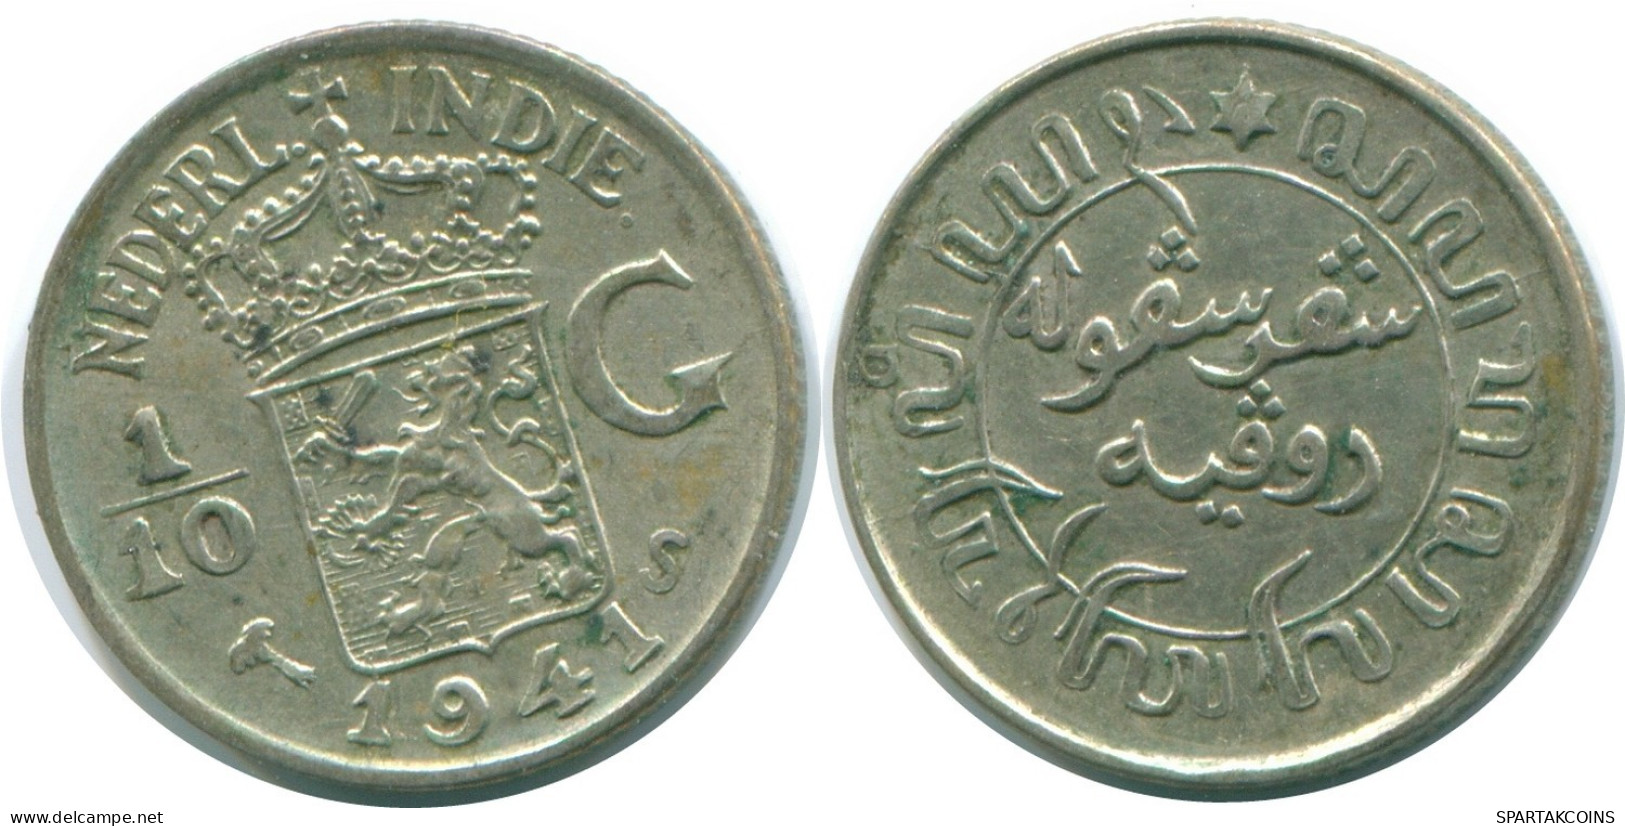 1/10 GULDEN 1941 S NIEDERLANDE OSTINDIEN SILBER Koloniale Münze #NL13663.3.D.A - Niederländisch-Indien